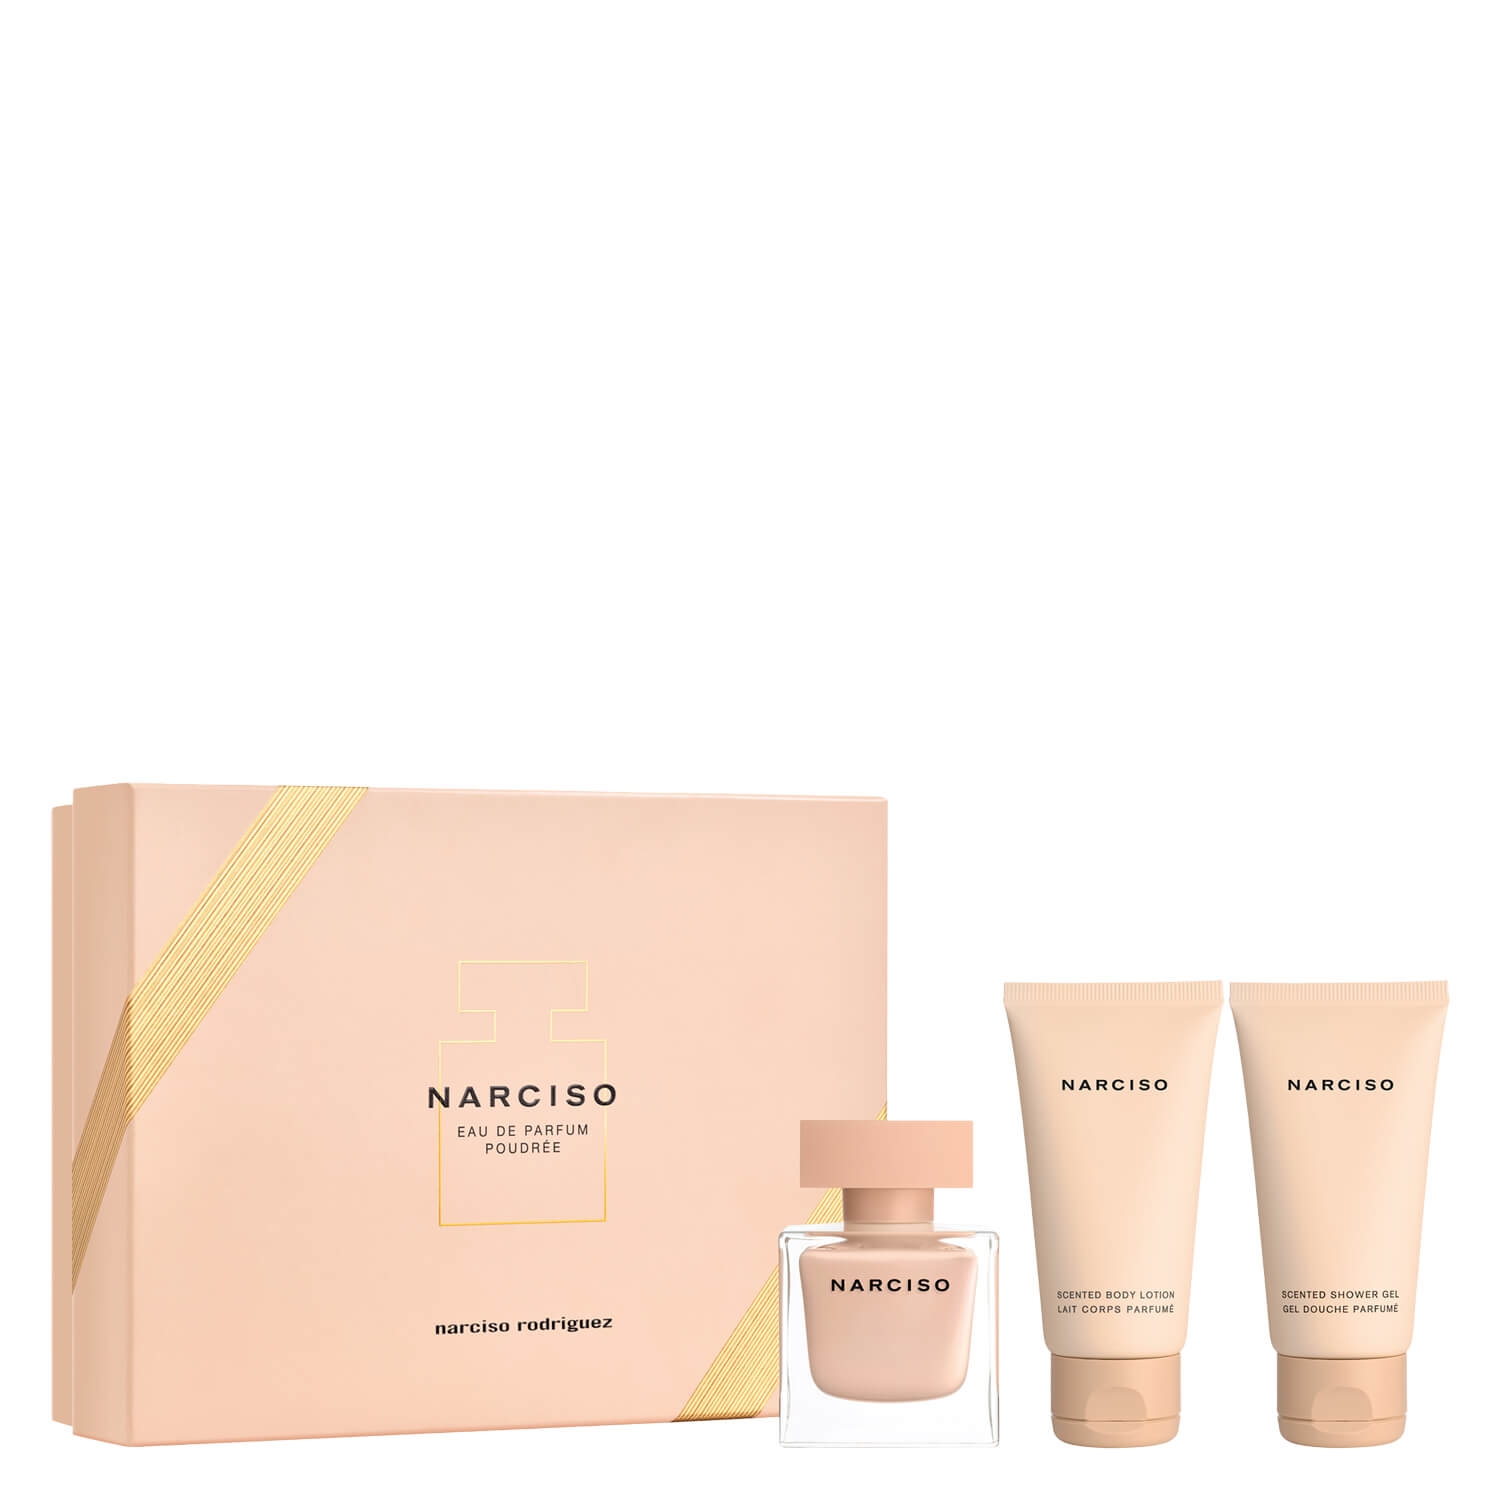 Produktbild von Narciso - Eau de Parfum Poudrée Set